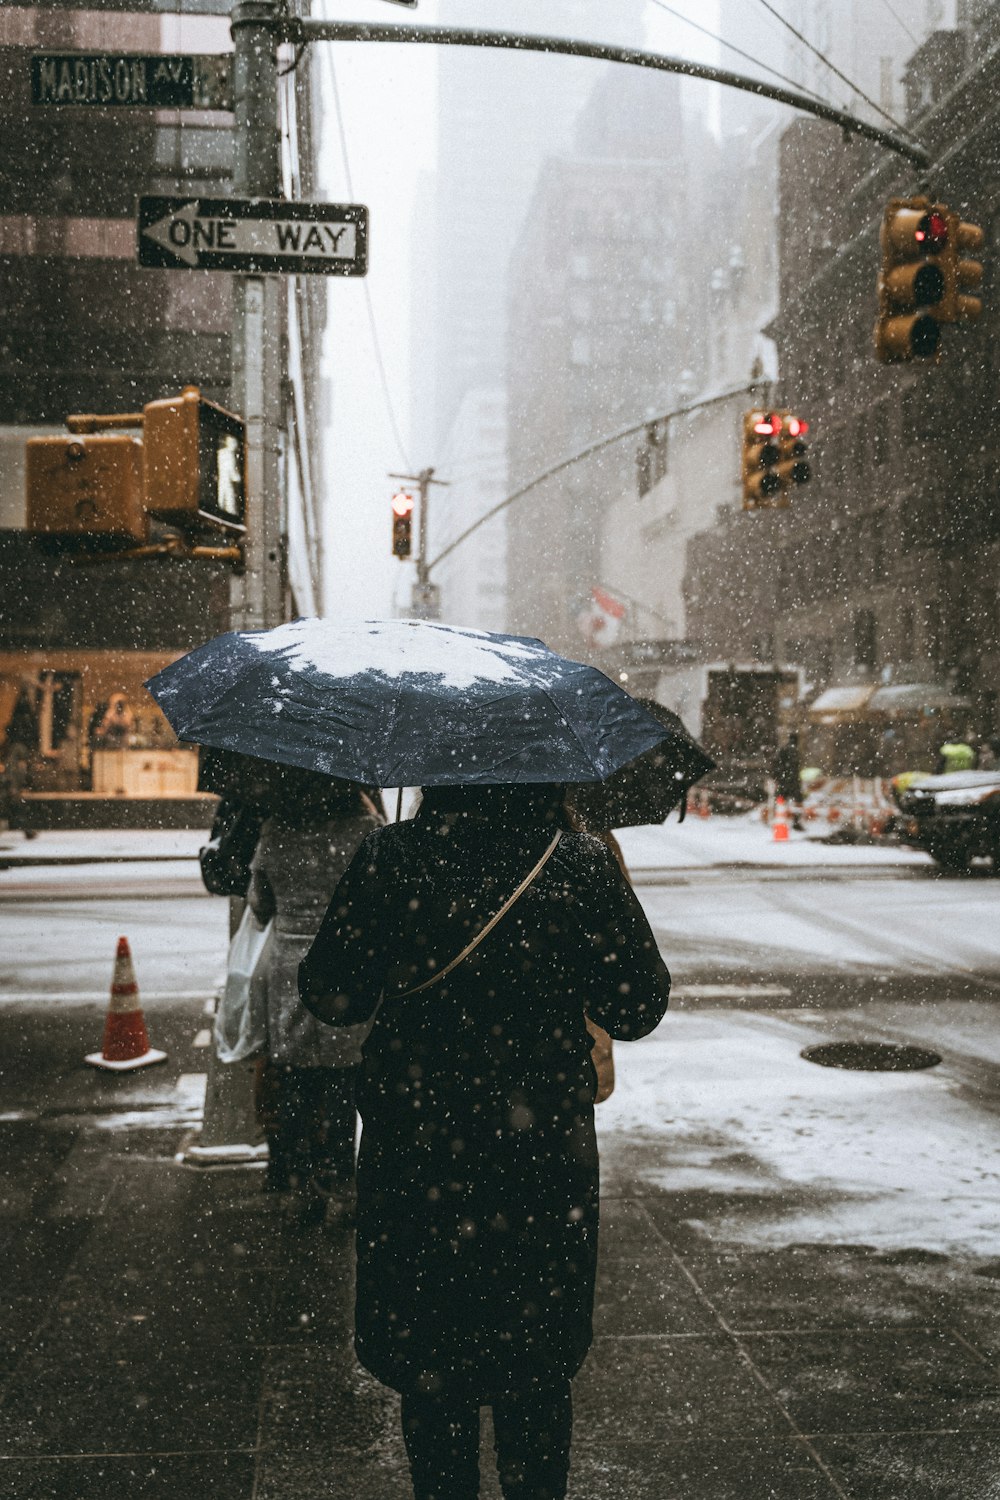 Une femme marchant dans une rue tenant un parapluie